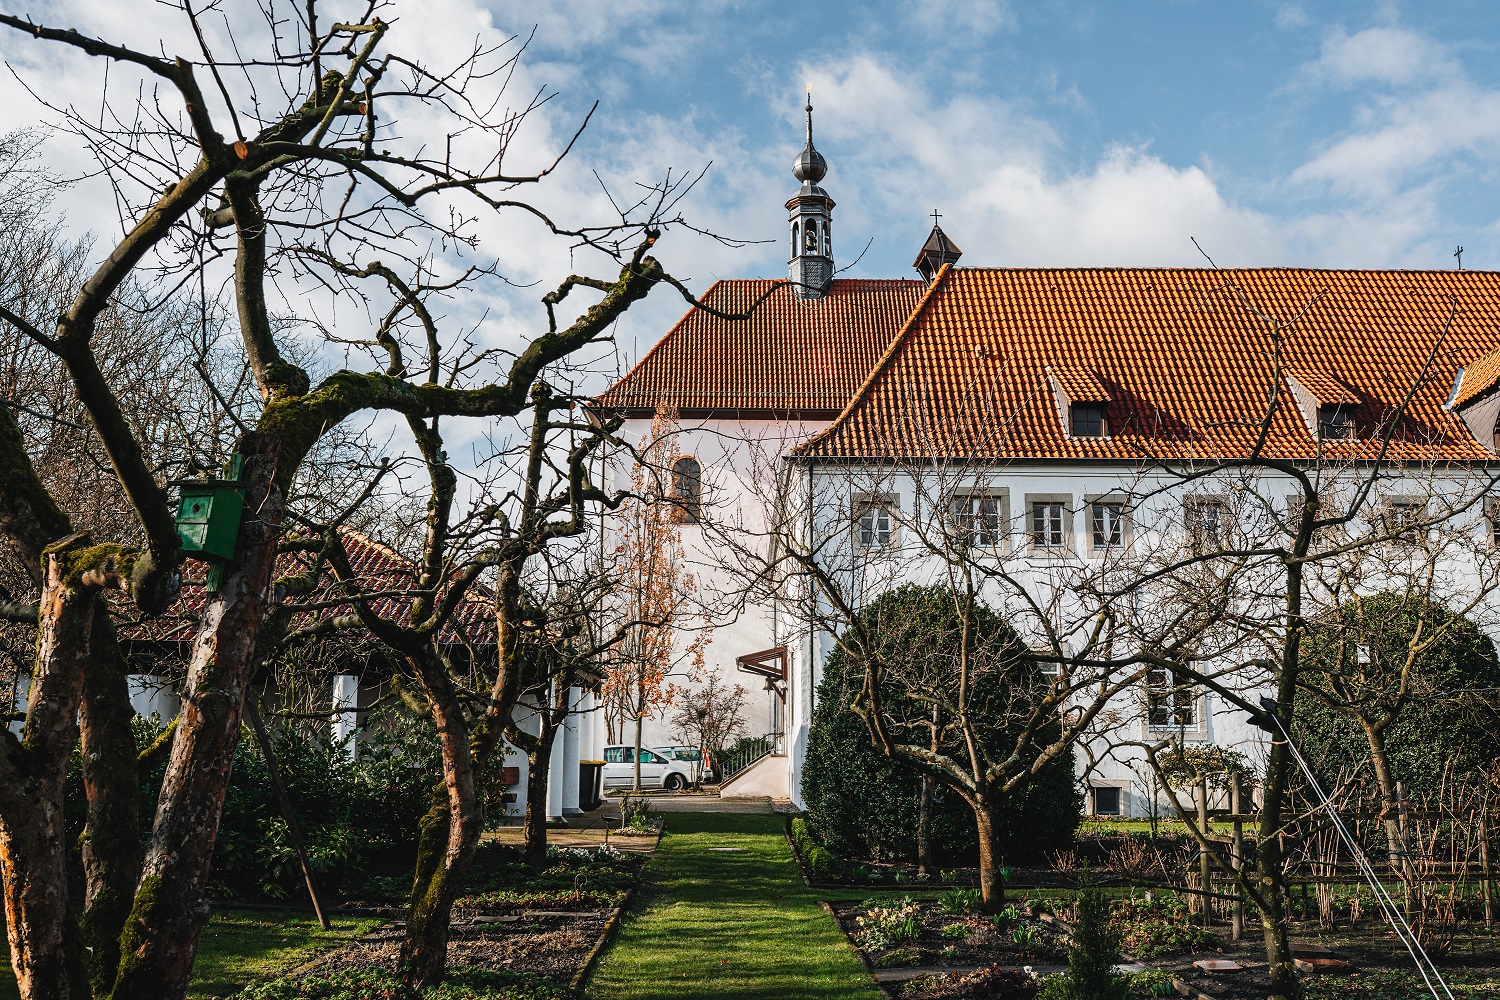 Kloster Werne